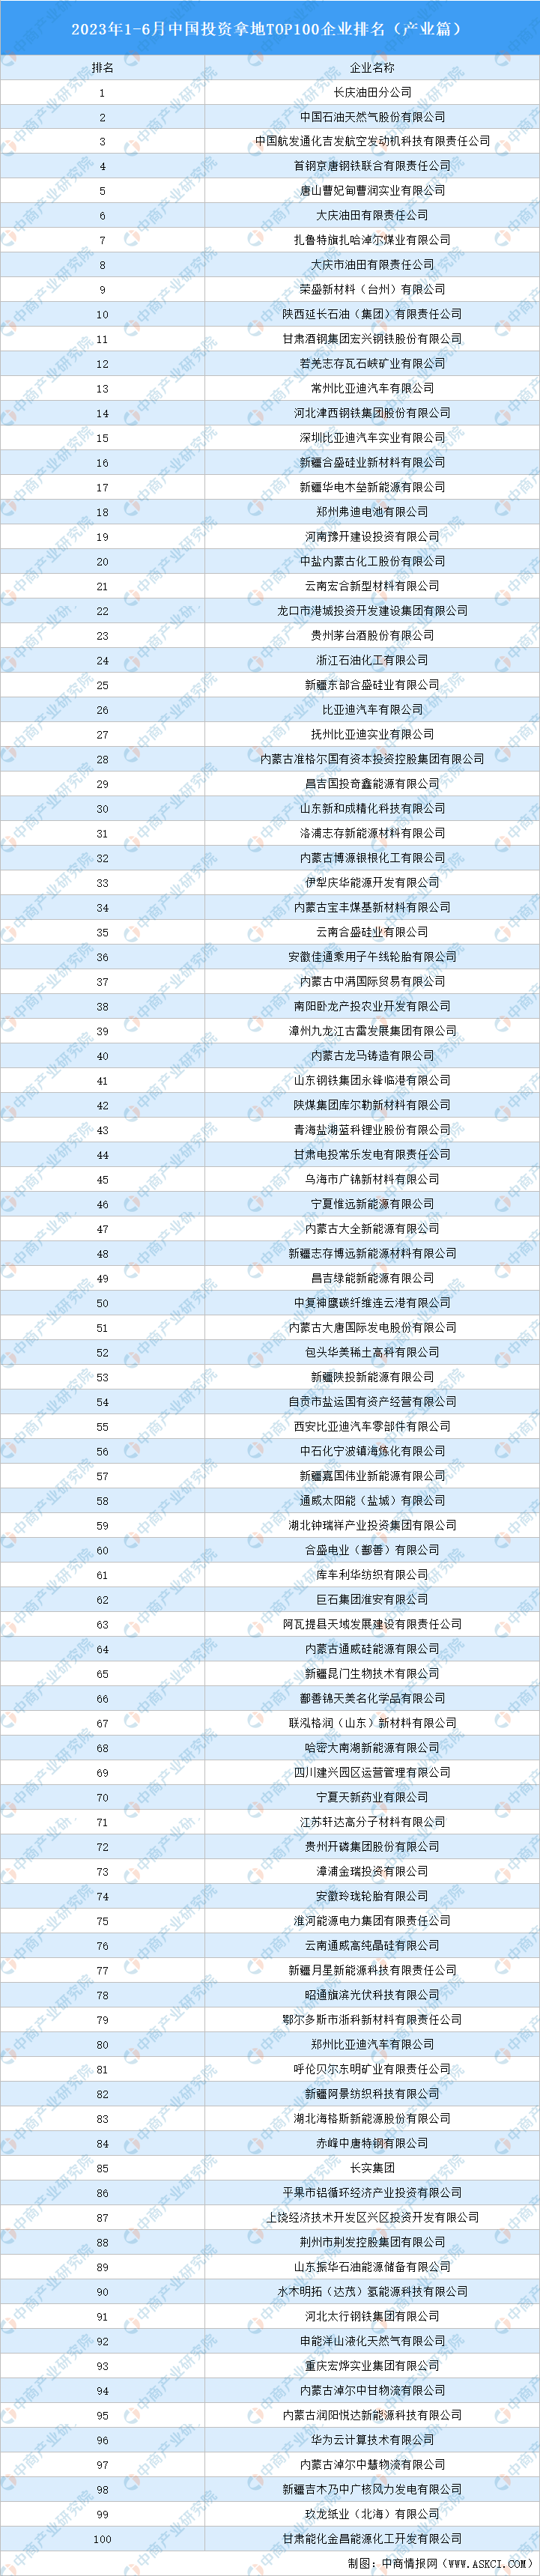 2023年1-6月中国投资拿地TOP100企业排行榜